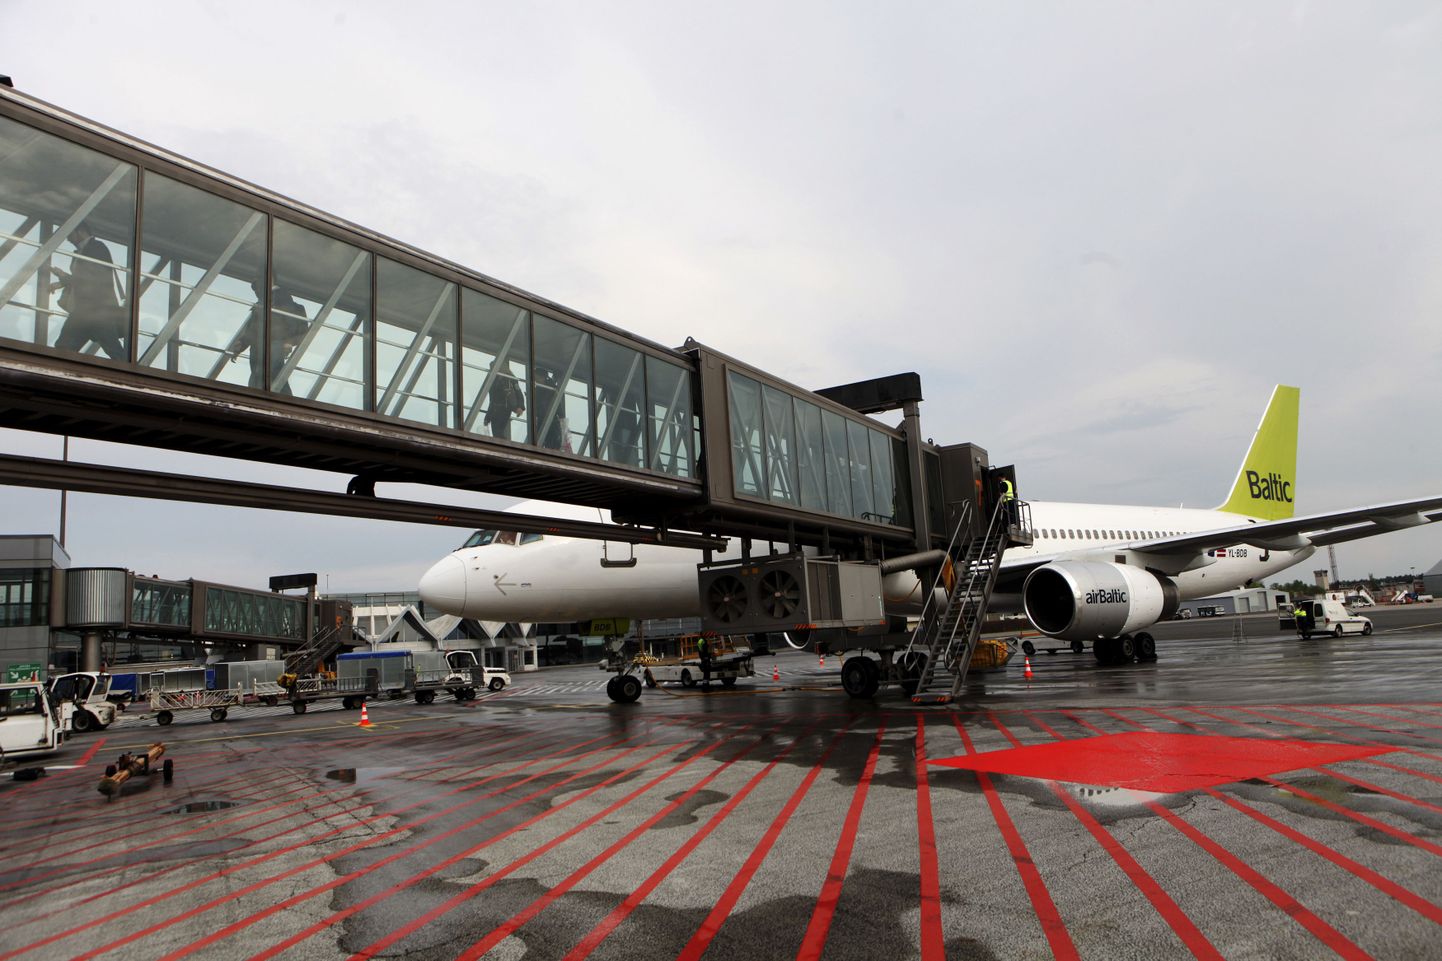 AirBalticu Boeing 757-256 Riia lennujaamas. Euroopa kohtu otsusega peavad nii Airbaltic kui ka Riia lennujaam pankrotistunud FlyLALi kreeditoridele oma vara loovutama.